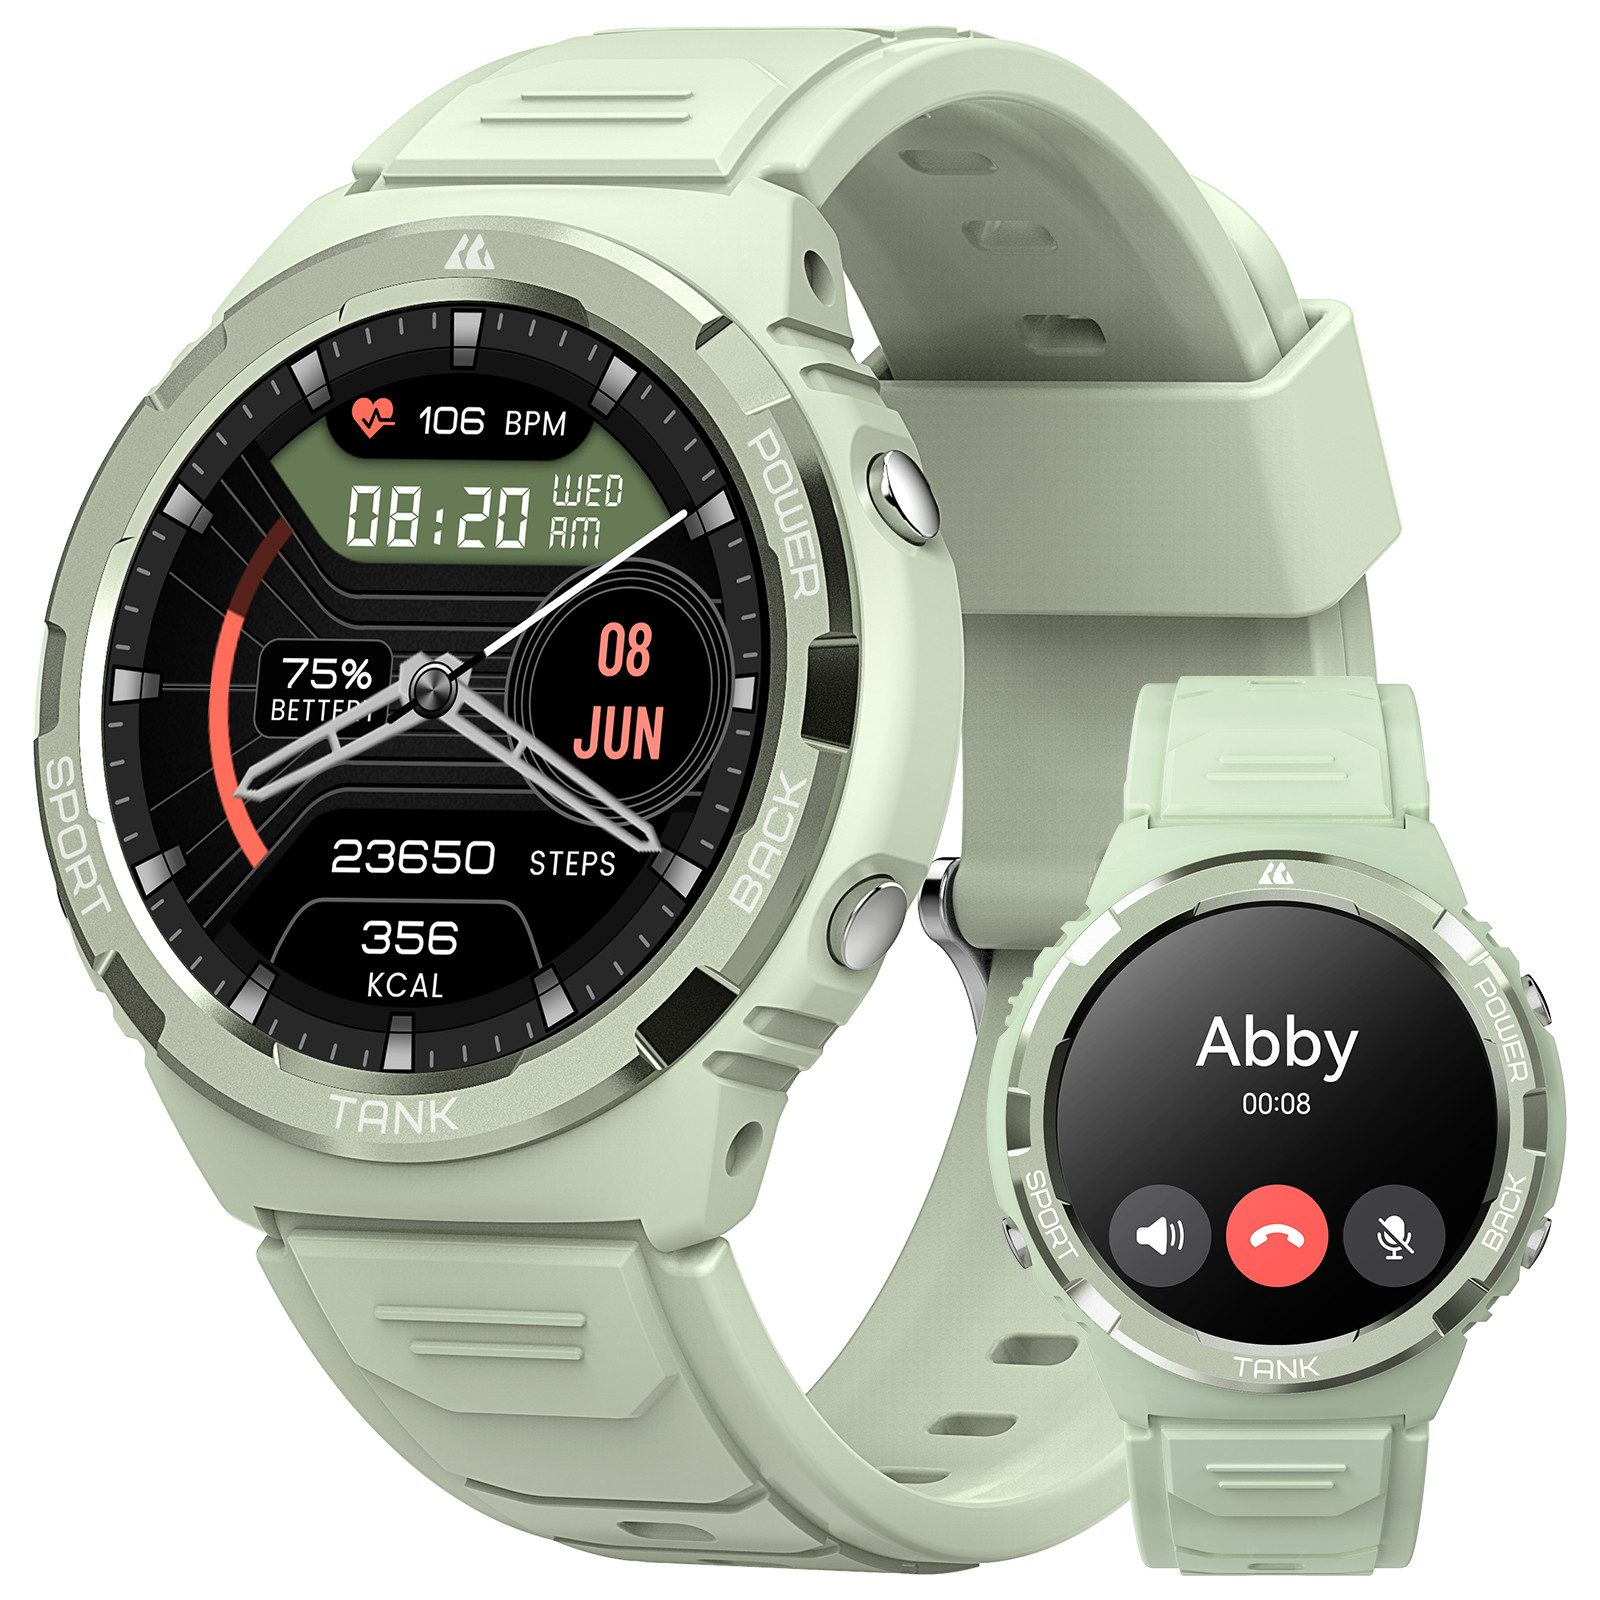 KOSPET Robuste Militär-Smartwatch für Android und iOS, 50 Meter wasserdicht Smartwatch (3,3 cm/1,3 Zoll), großer Akku mit 60 Tagen Standby, Bluetooth-Anrufe, für Herren